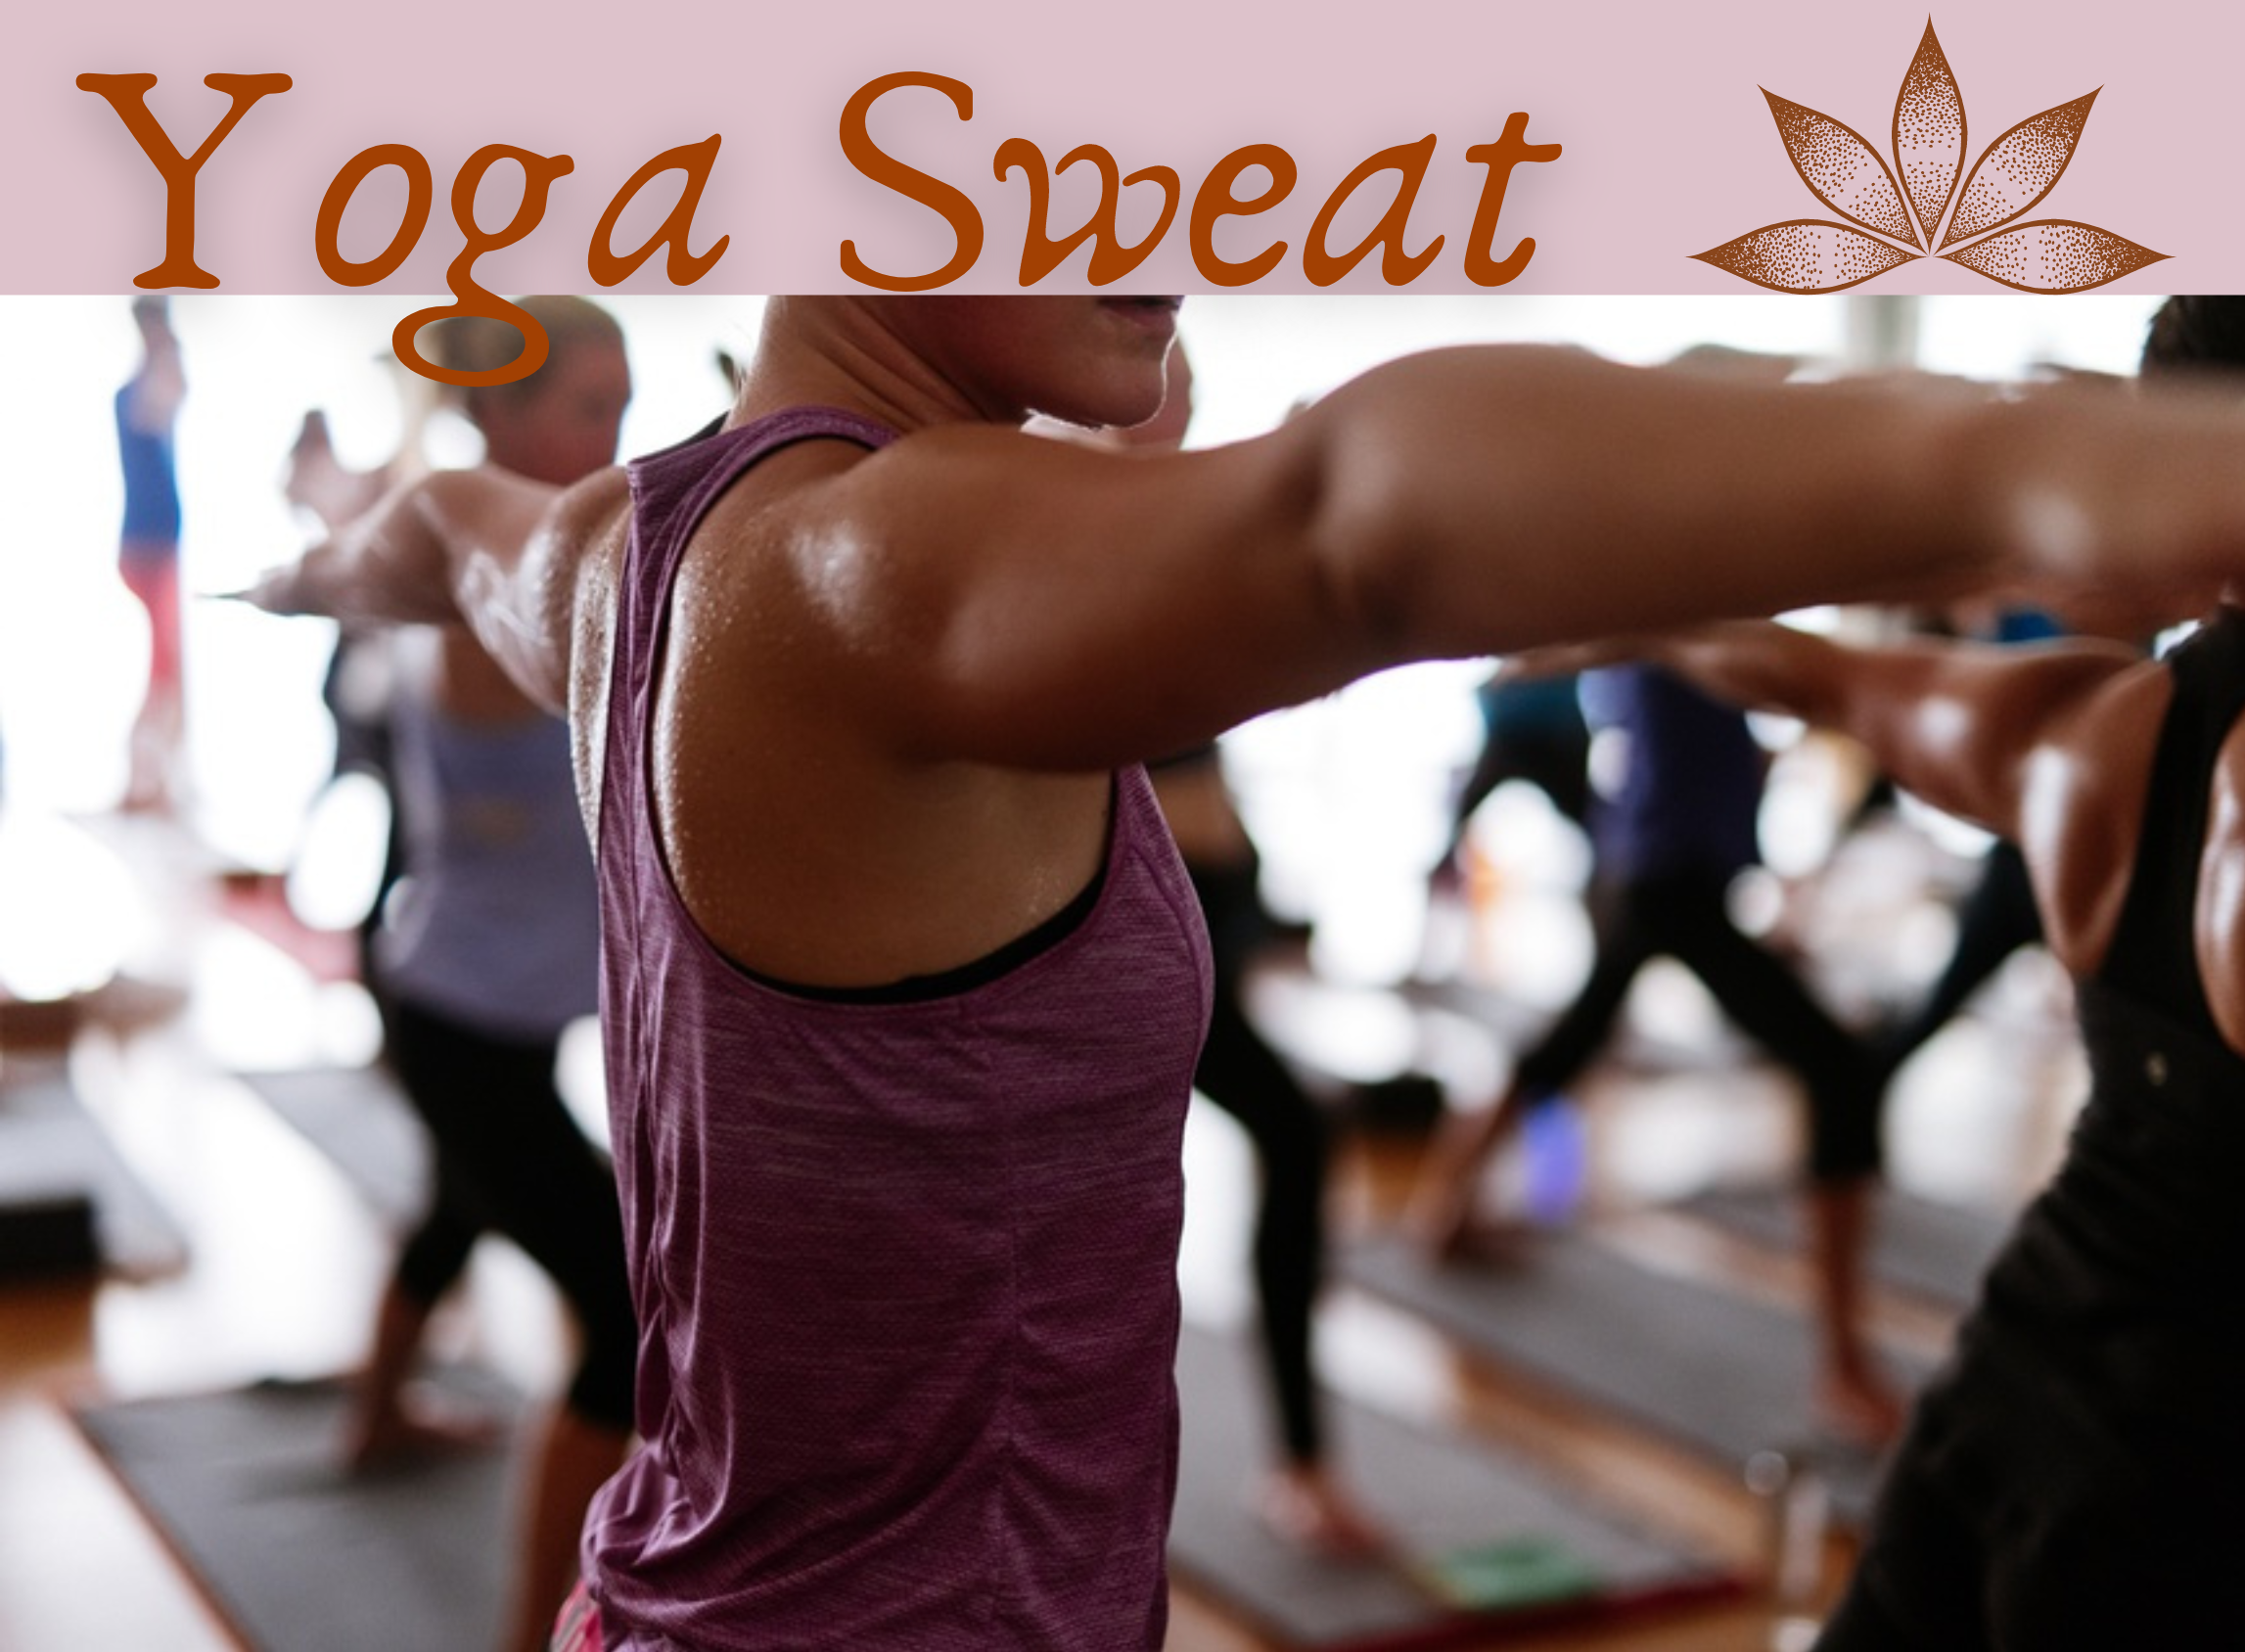 yoga sweat verbweb